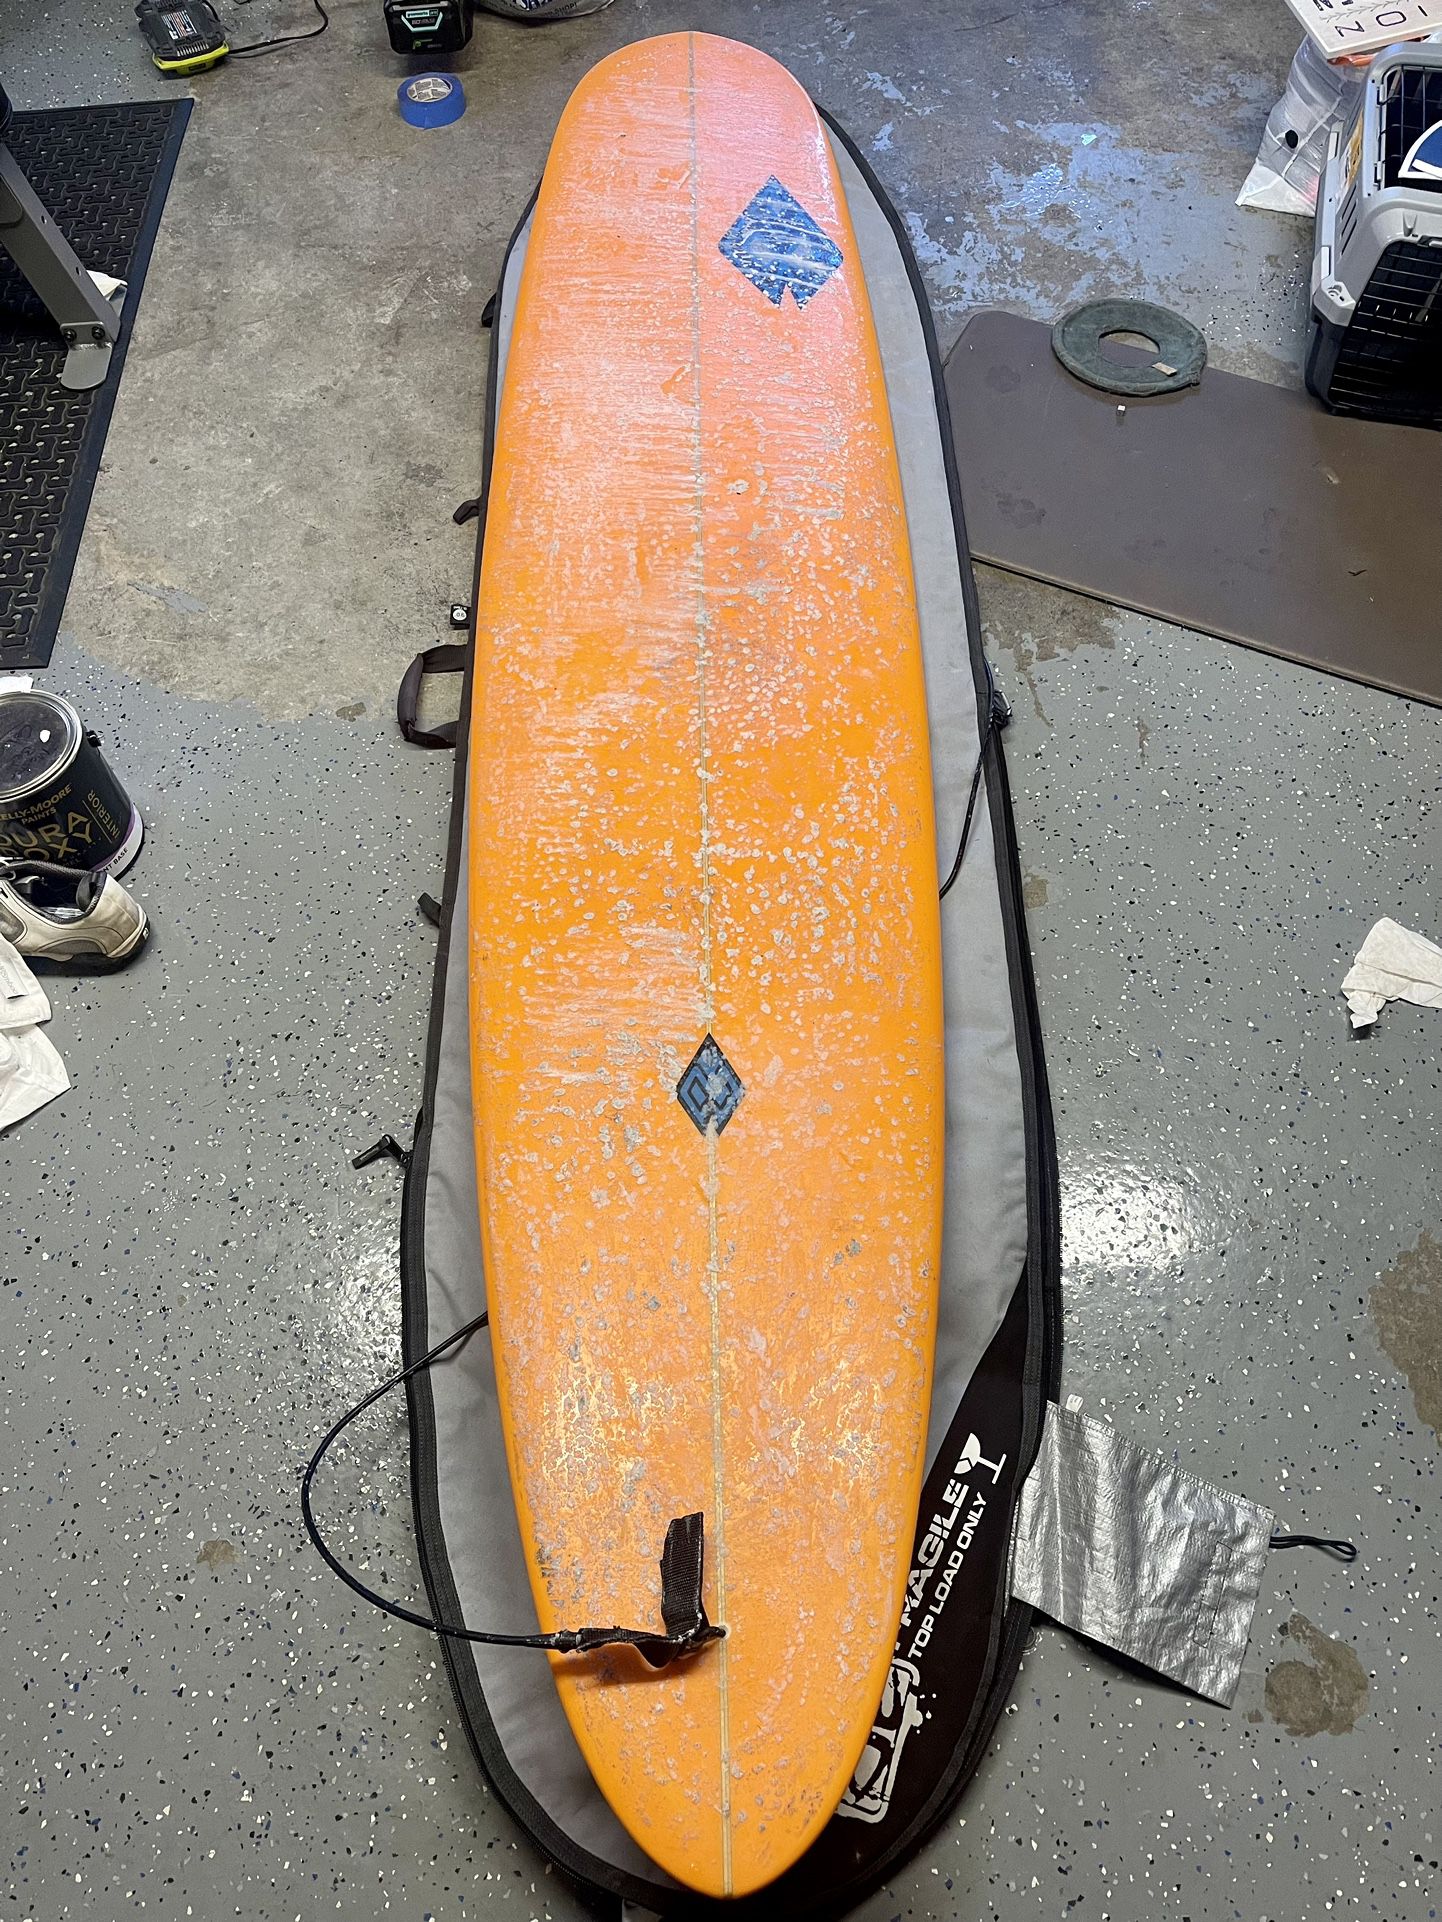 9’1” Longboard Surfboard $450obo